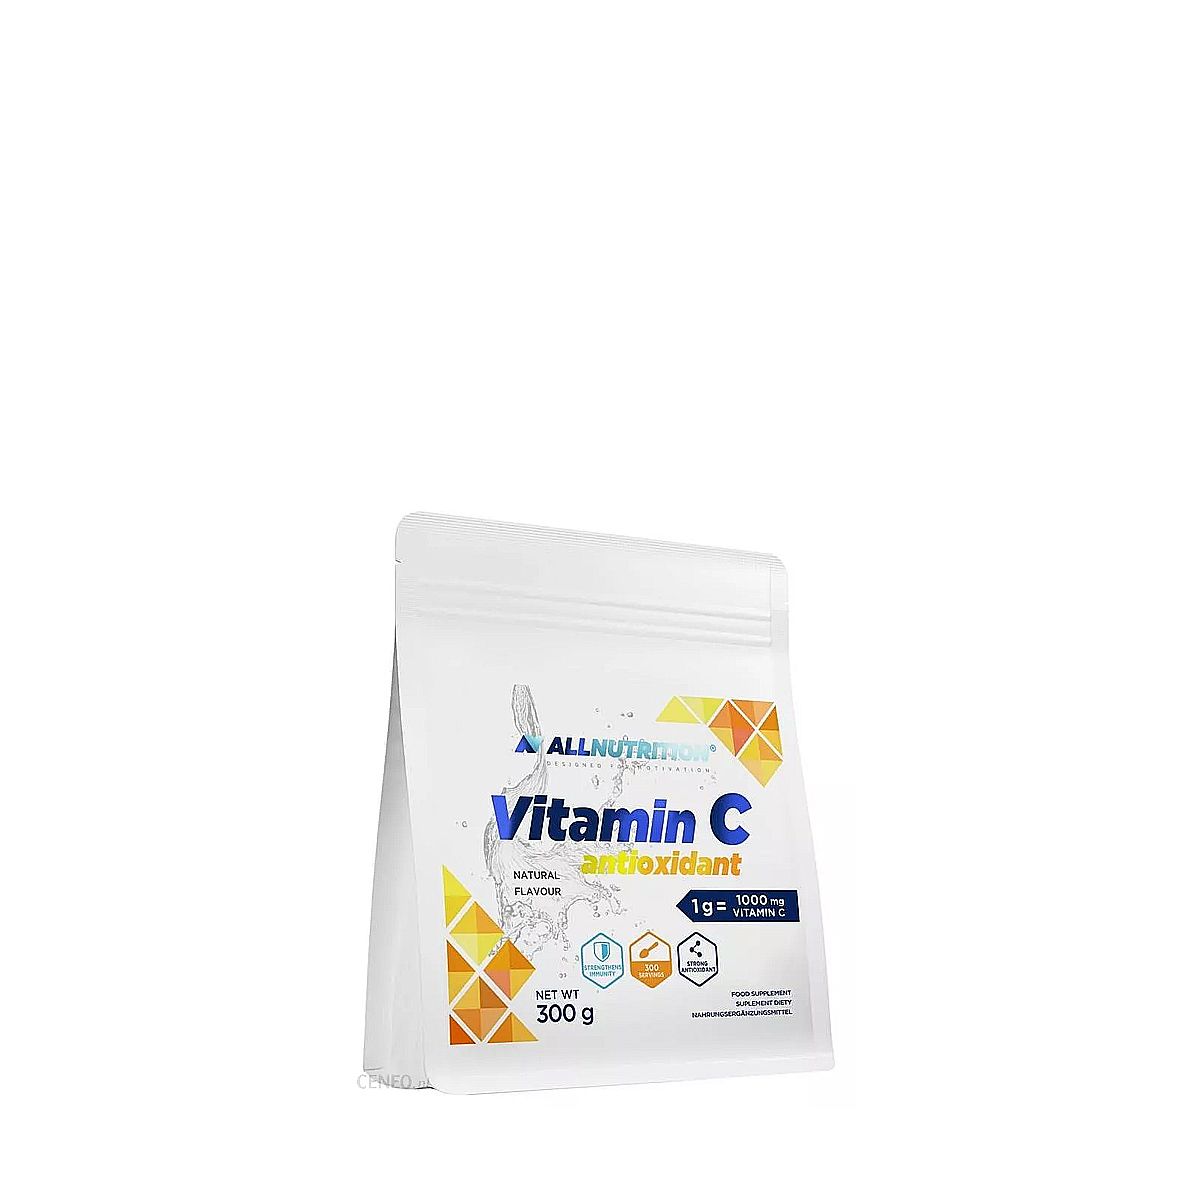 ALLNUTRITION - VITAMIN C ANTIOXIDANT - 300 G